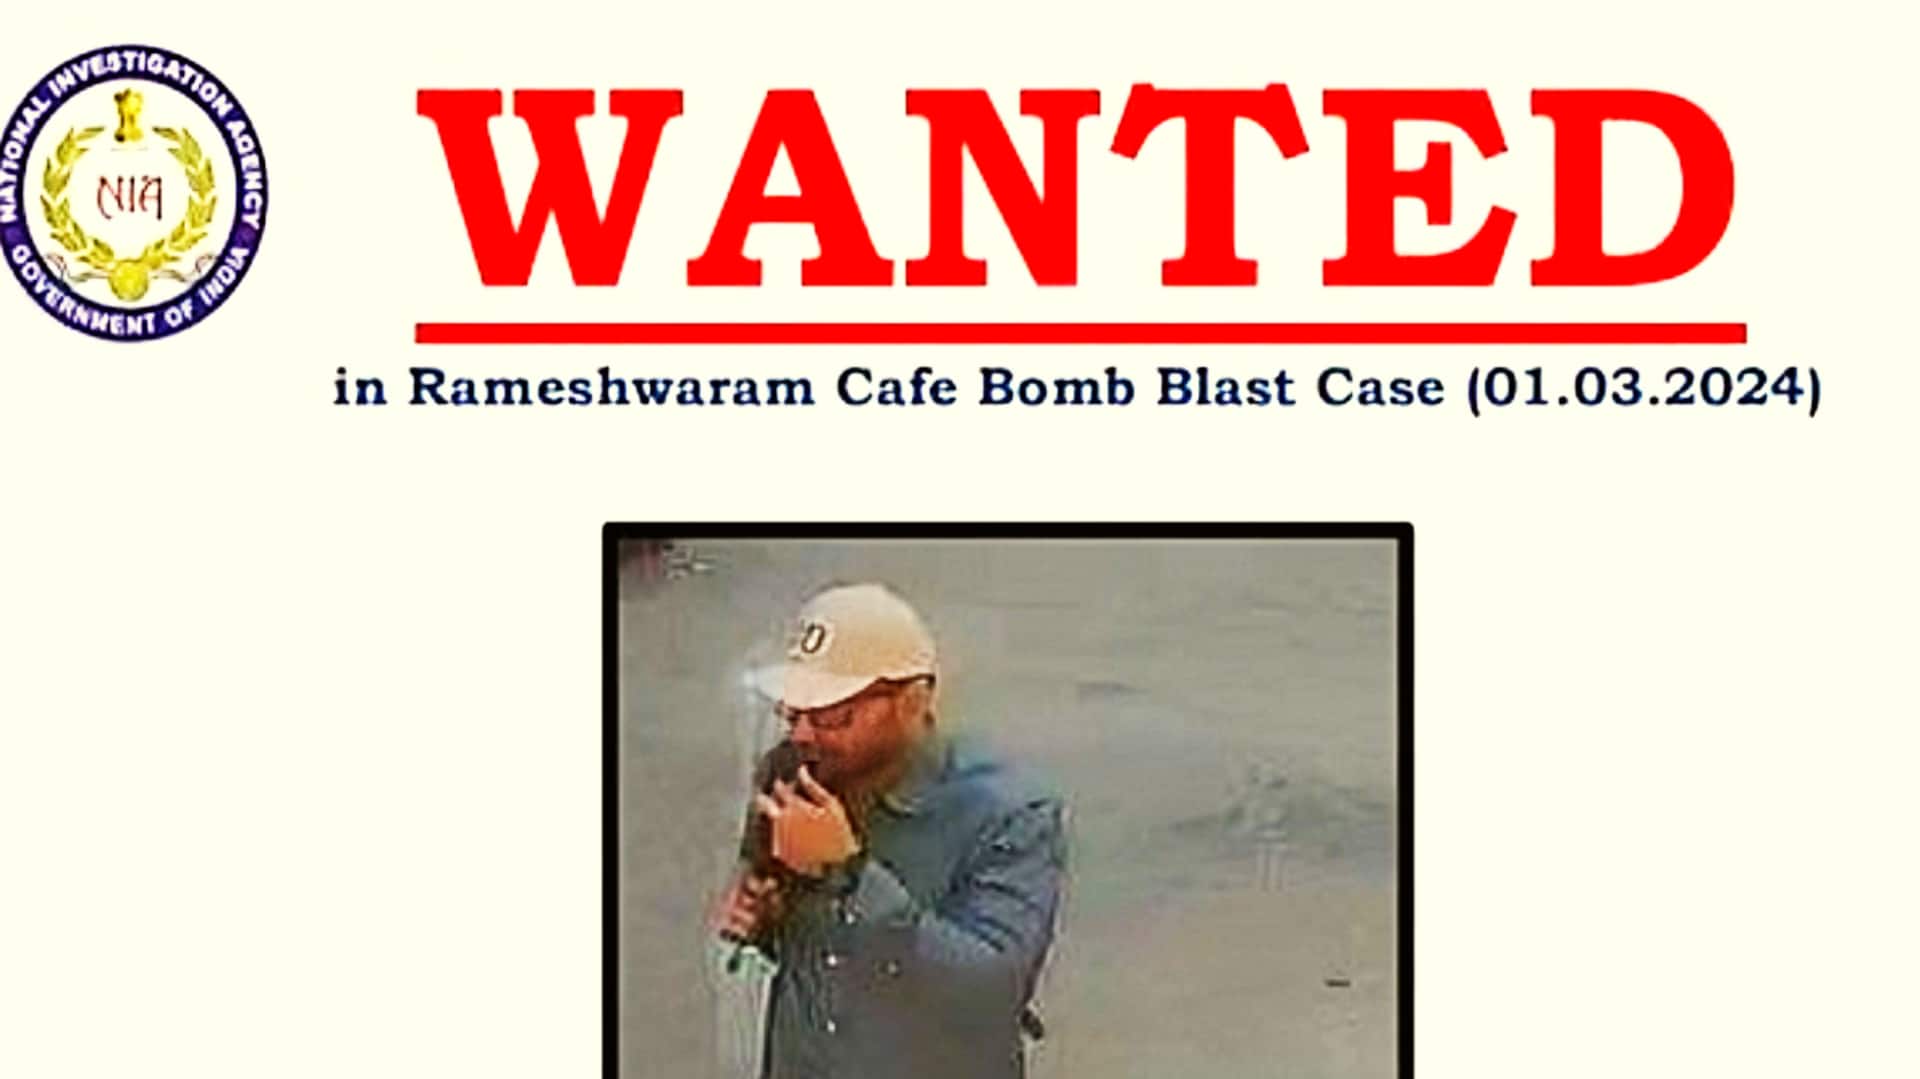 बेंगलुरु: रामेश्वरम कैफे में धमाका करने वाले संदिग्ध का पोस्टर जारी, 10 लाख रुपये इनाम घोषित